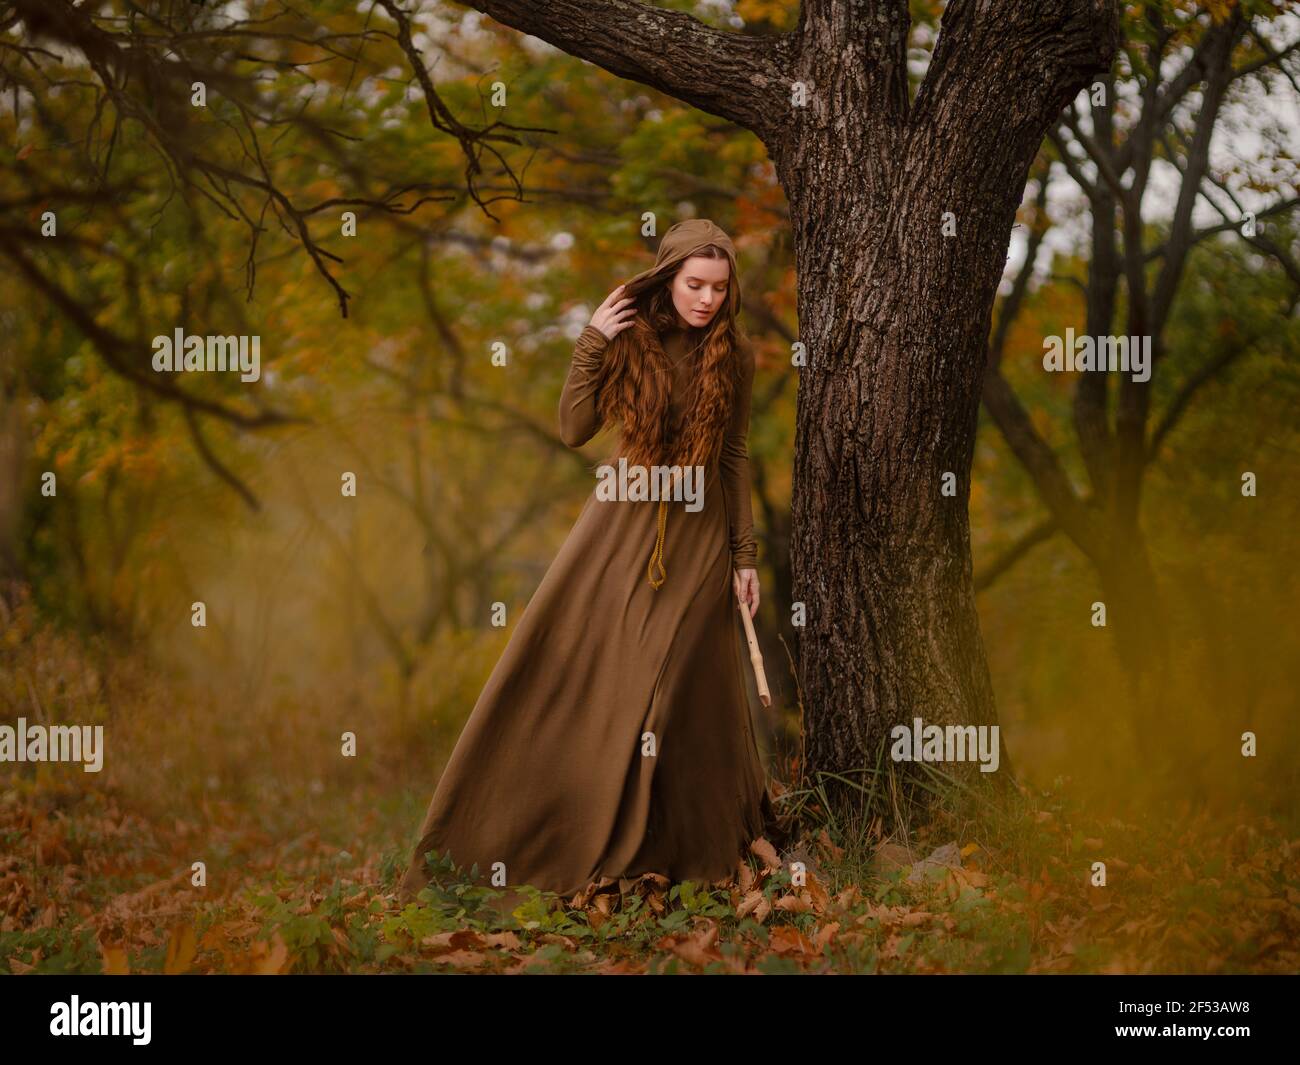 REDHEAD femme en robe marchant dans la forêt de conte de fées fantaisie Banque D'Images